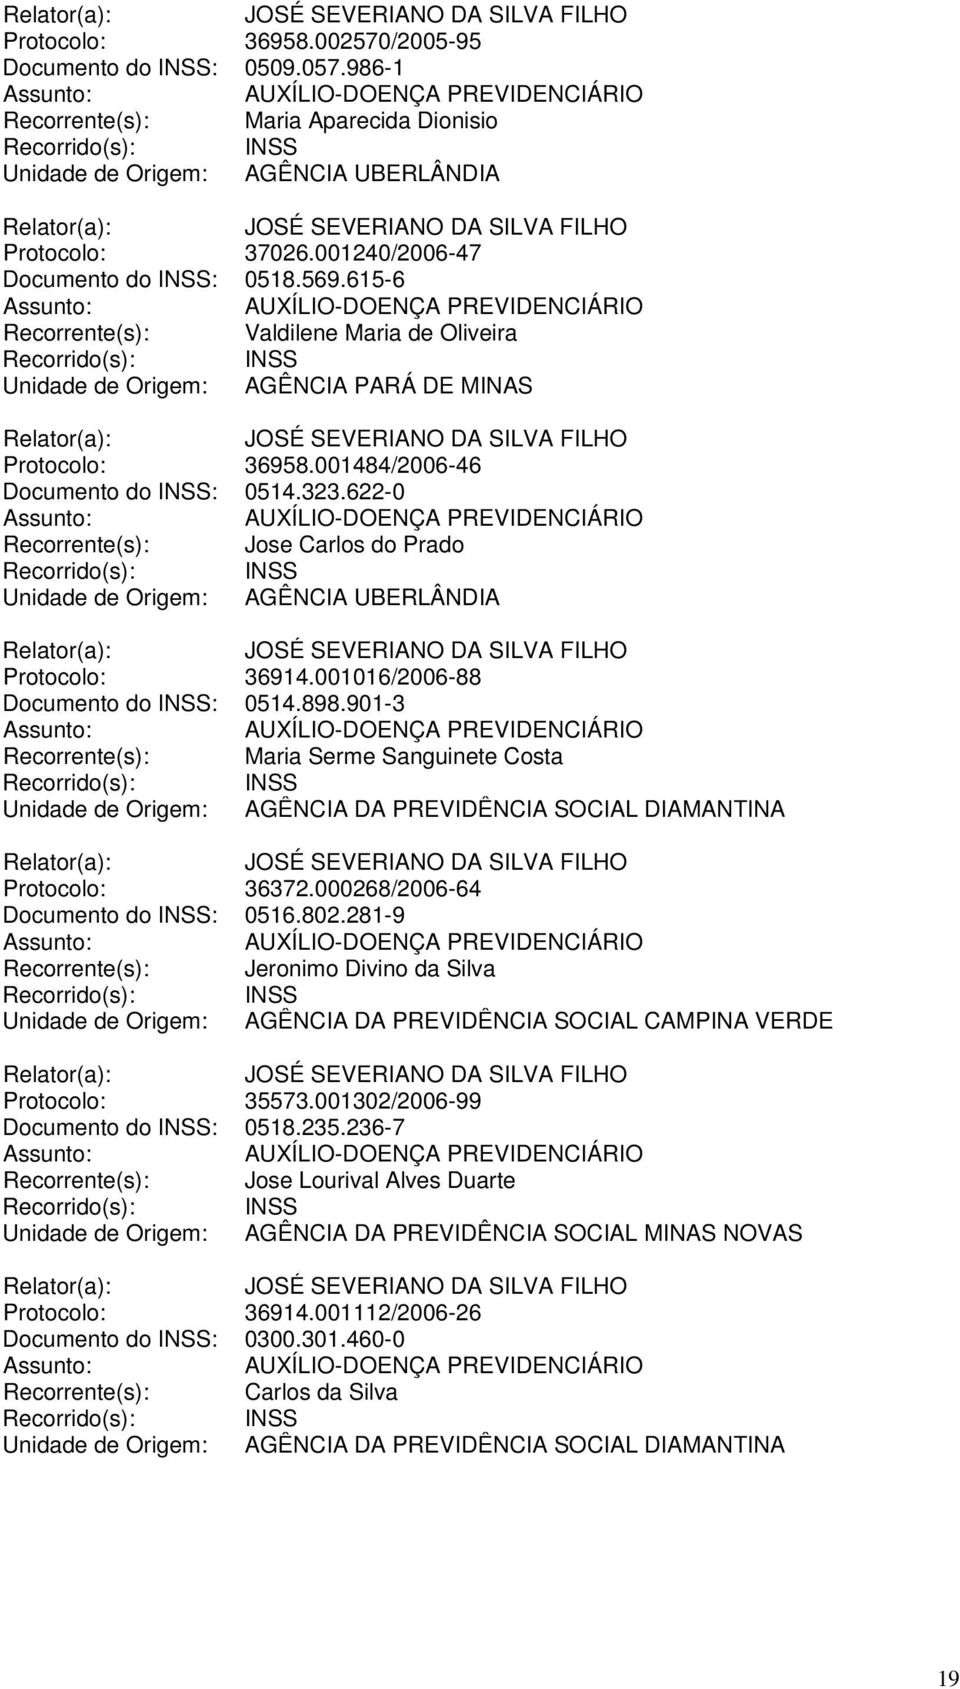 622-0 Recorrente(s): Jose Carlos do Prado Unidade de Origem: AGÊNCIA UBERLÂNDIA Protocolo: 36914.001016/2006-88 Documento do INSS: 0514.898.